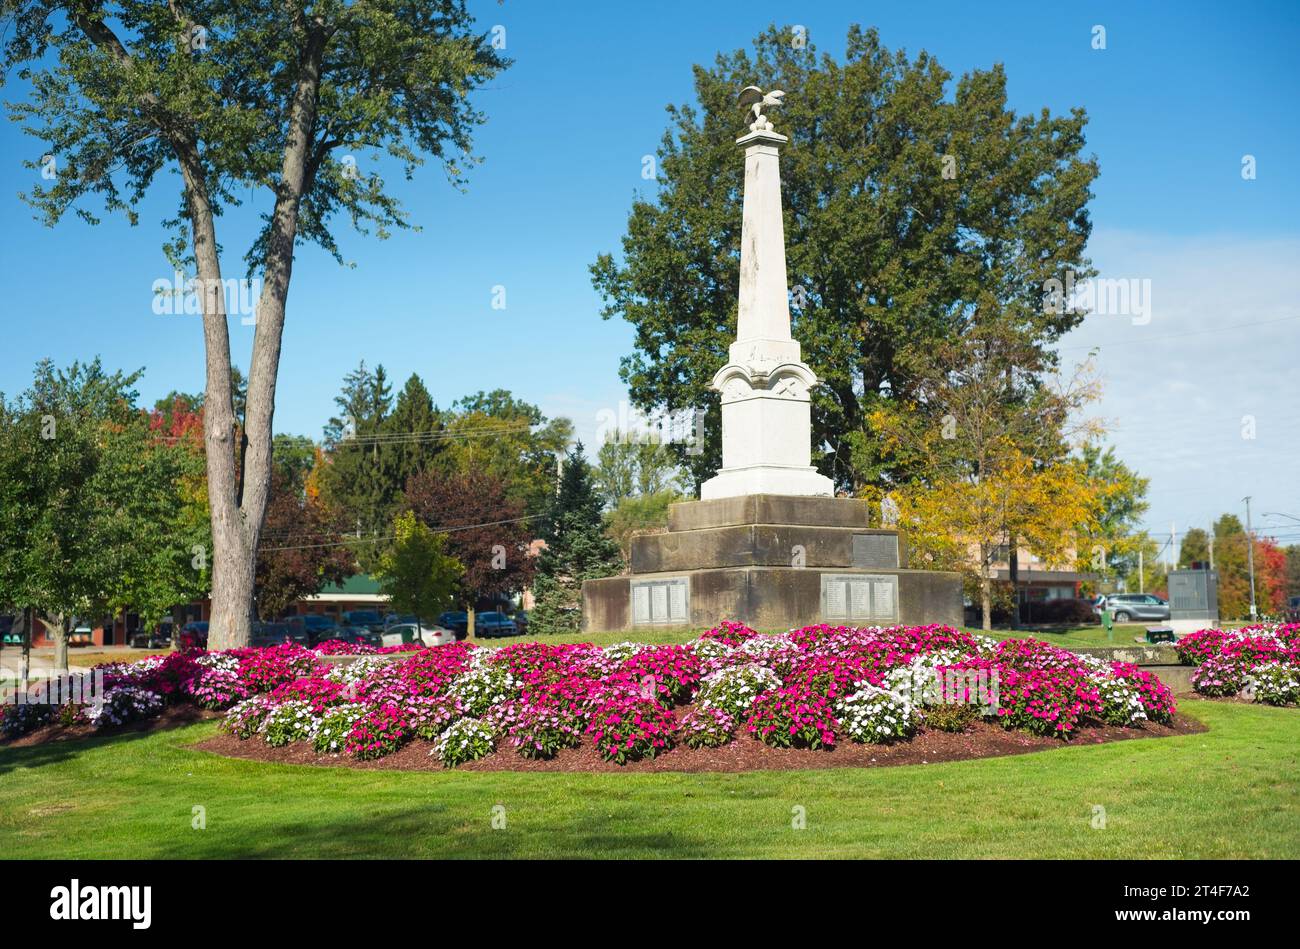 Das Denkmal für den Bürgerkrieg auf dem Stadtplatz in Twinsburg, Ohio, umgeben von Haufen lebendiger Petunien. Stockfoto